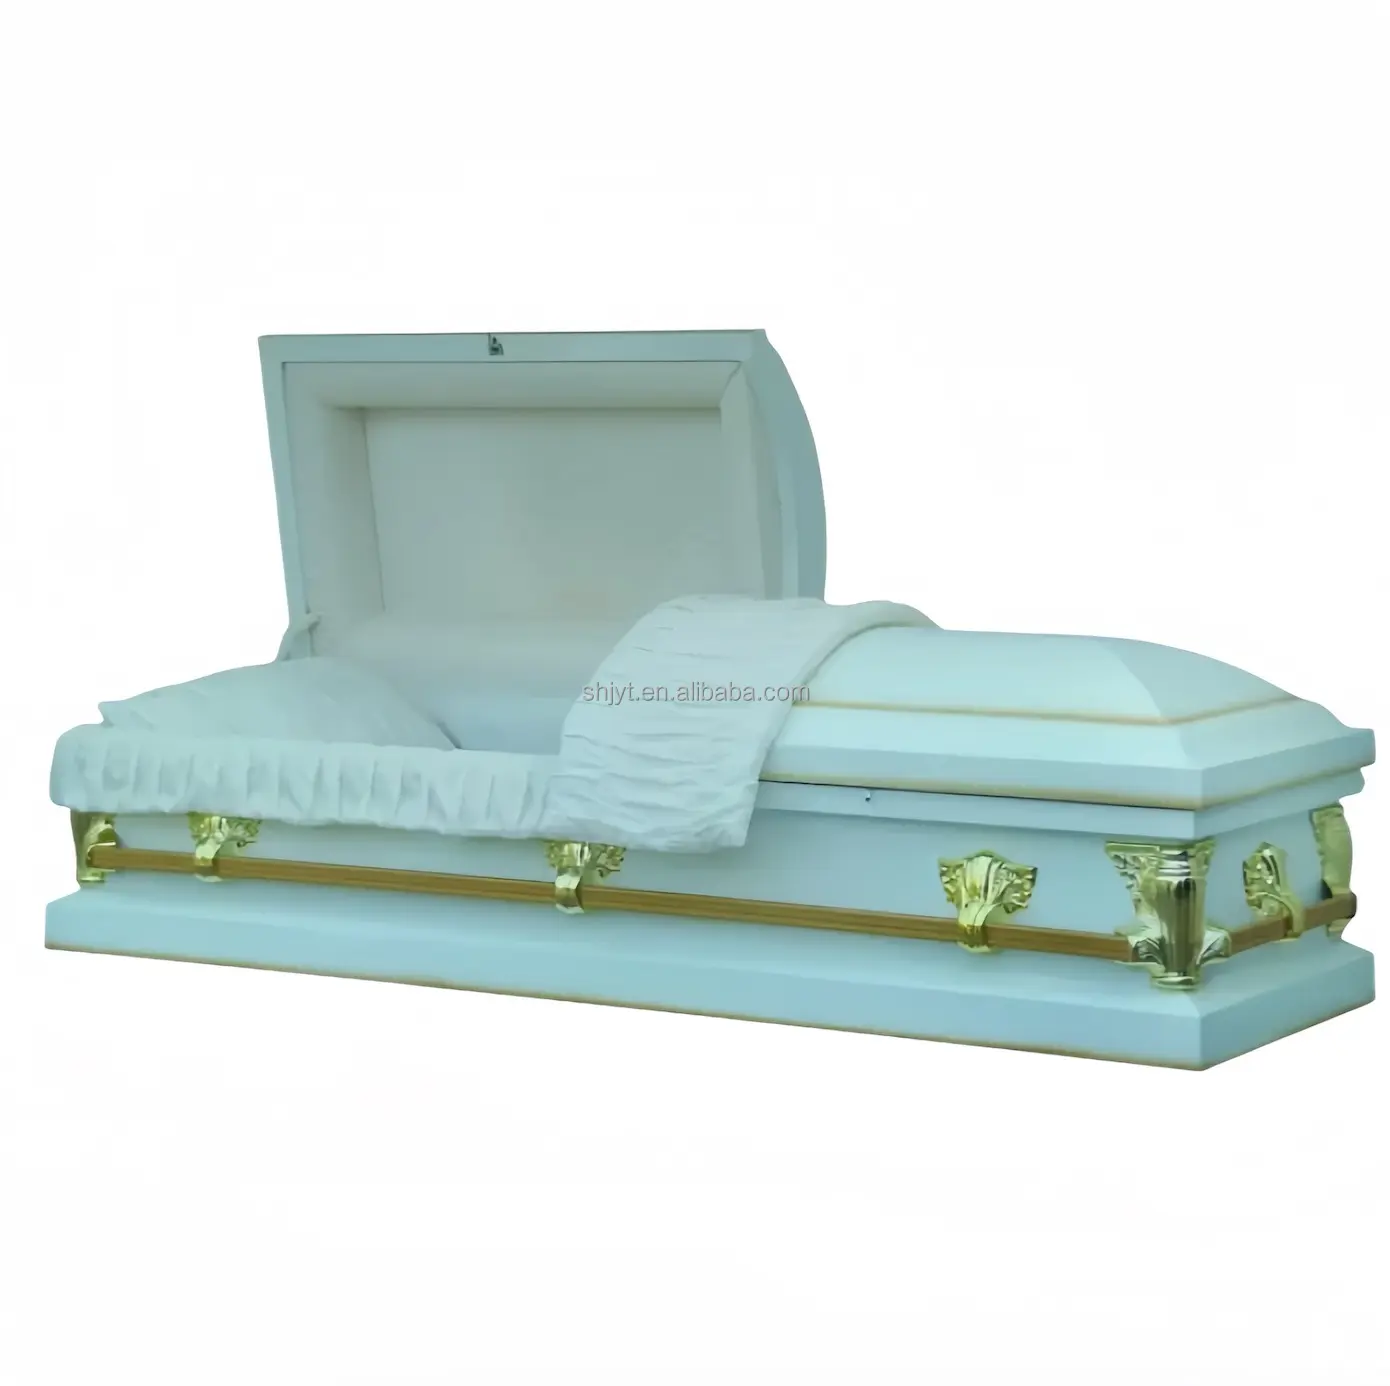 Prix d'usine Cercueil funéraire en bois amérique Mdf économique bon marché Cercueil de crémation en bois et cercueil pour adulte